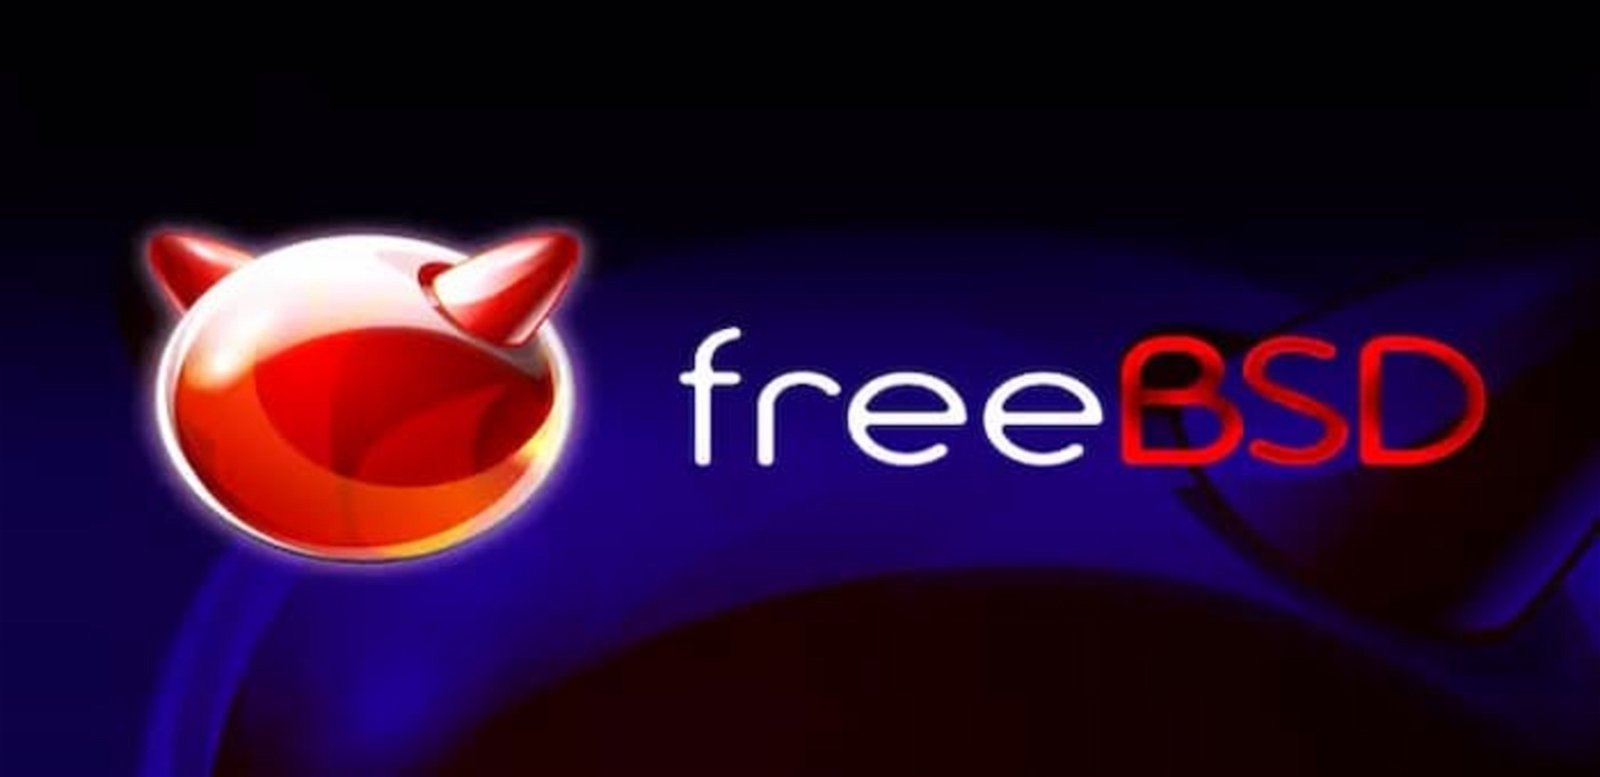 FreeBSD es un sistema operativo compatible con muchas tareas de internet, además de que está basado en BSD-Lite